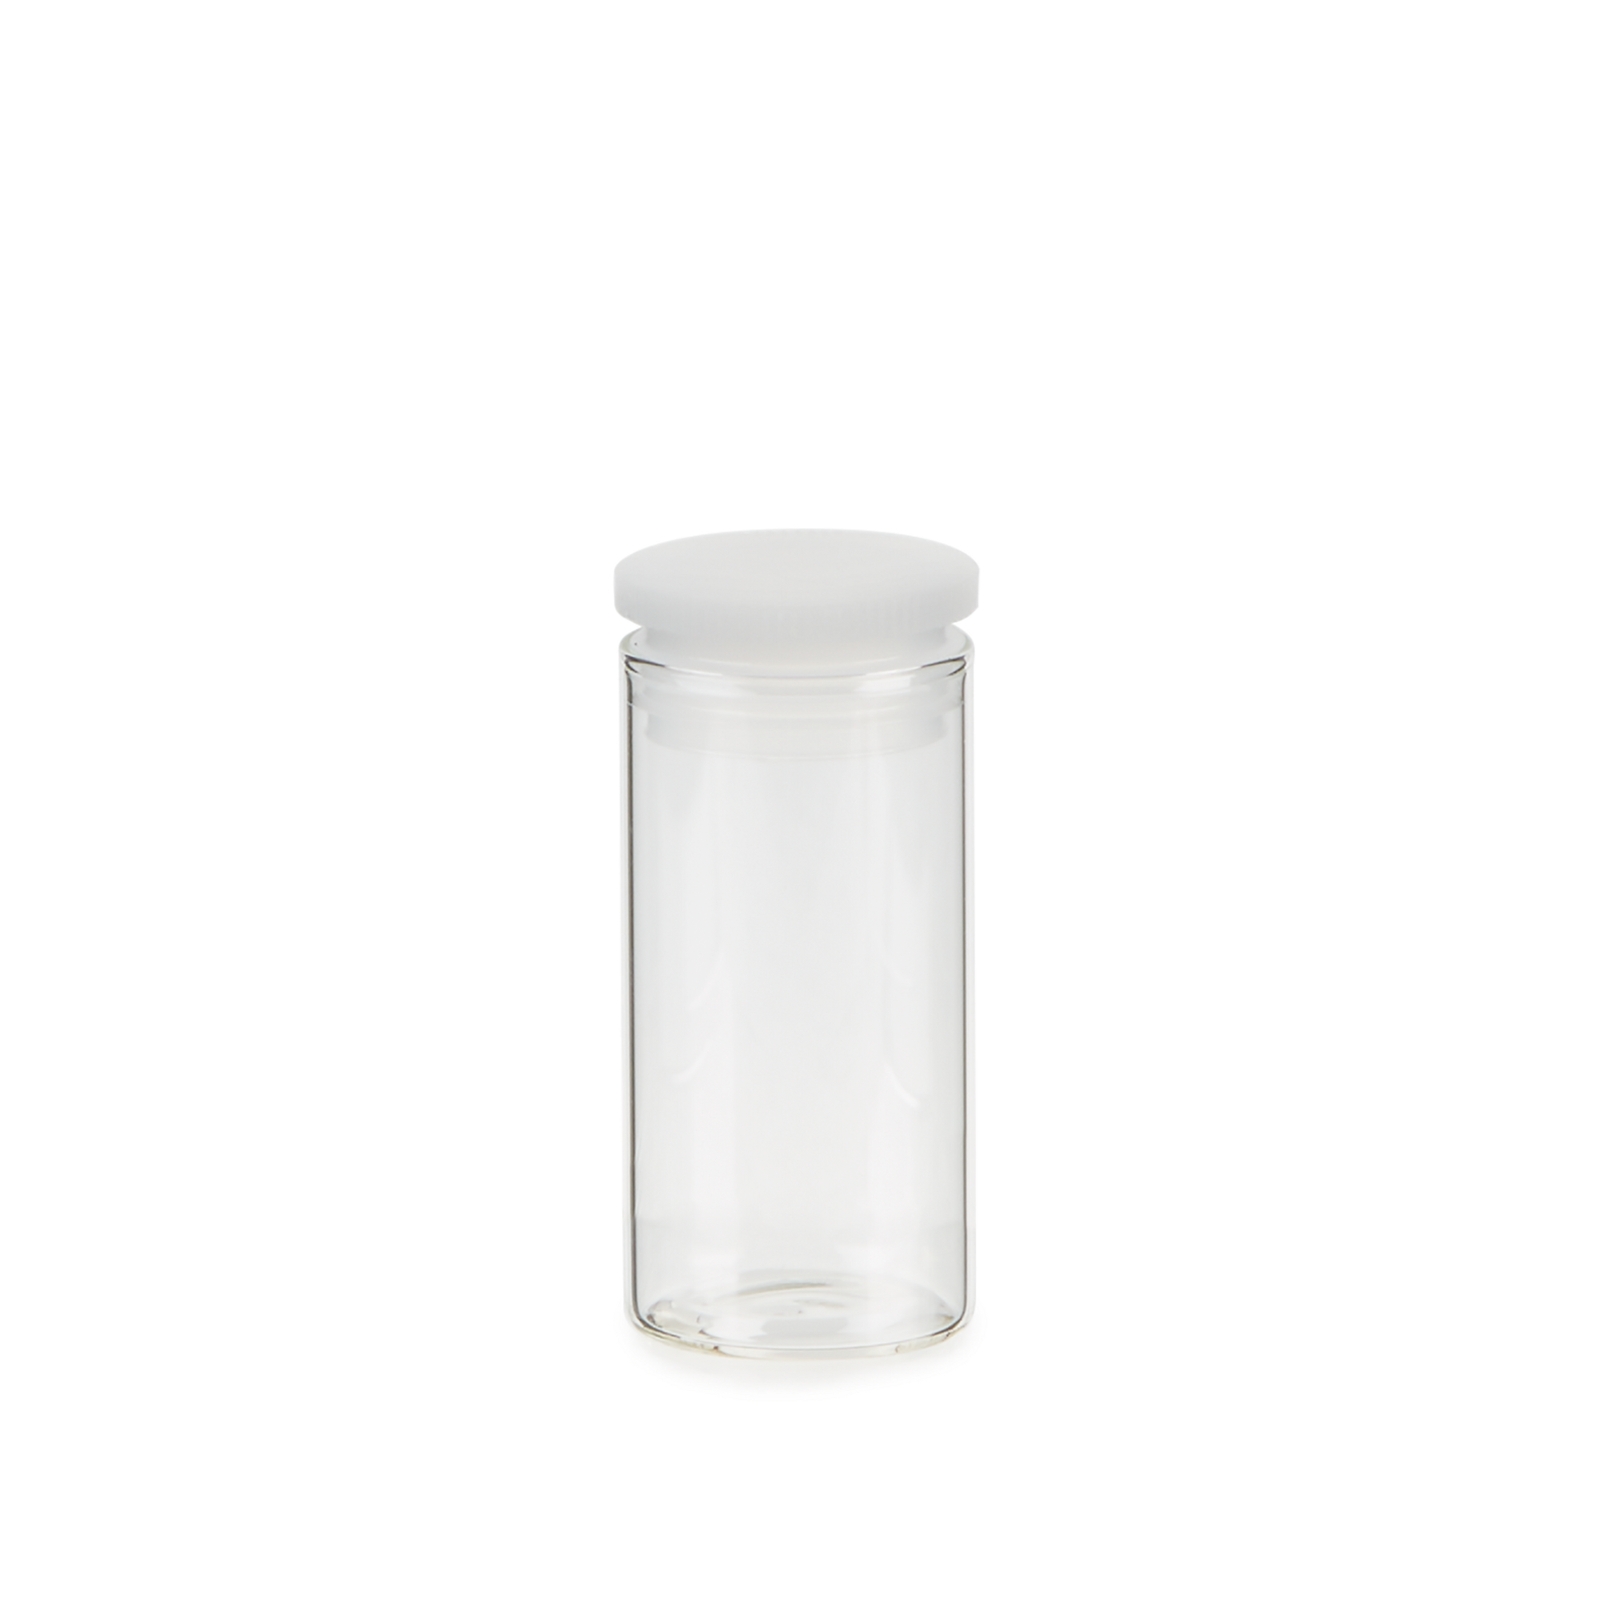 Glass sample tube 50x25mm